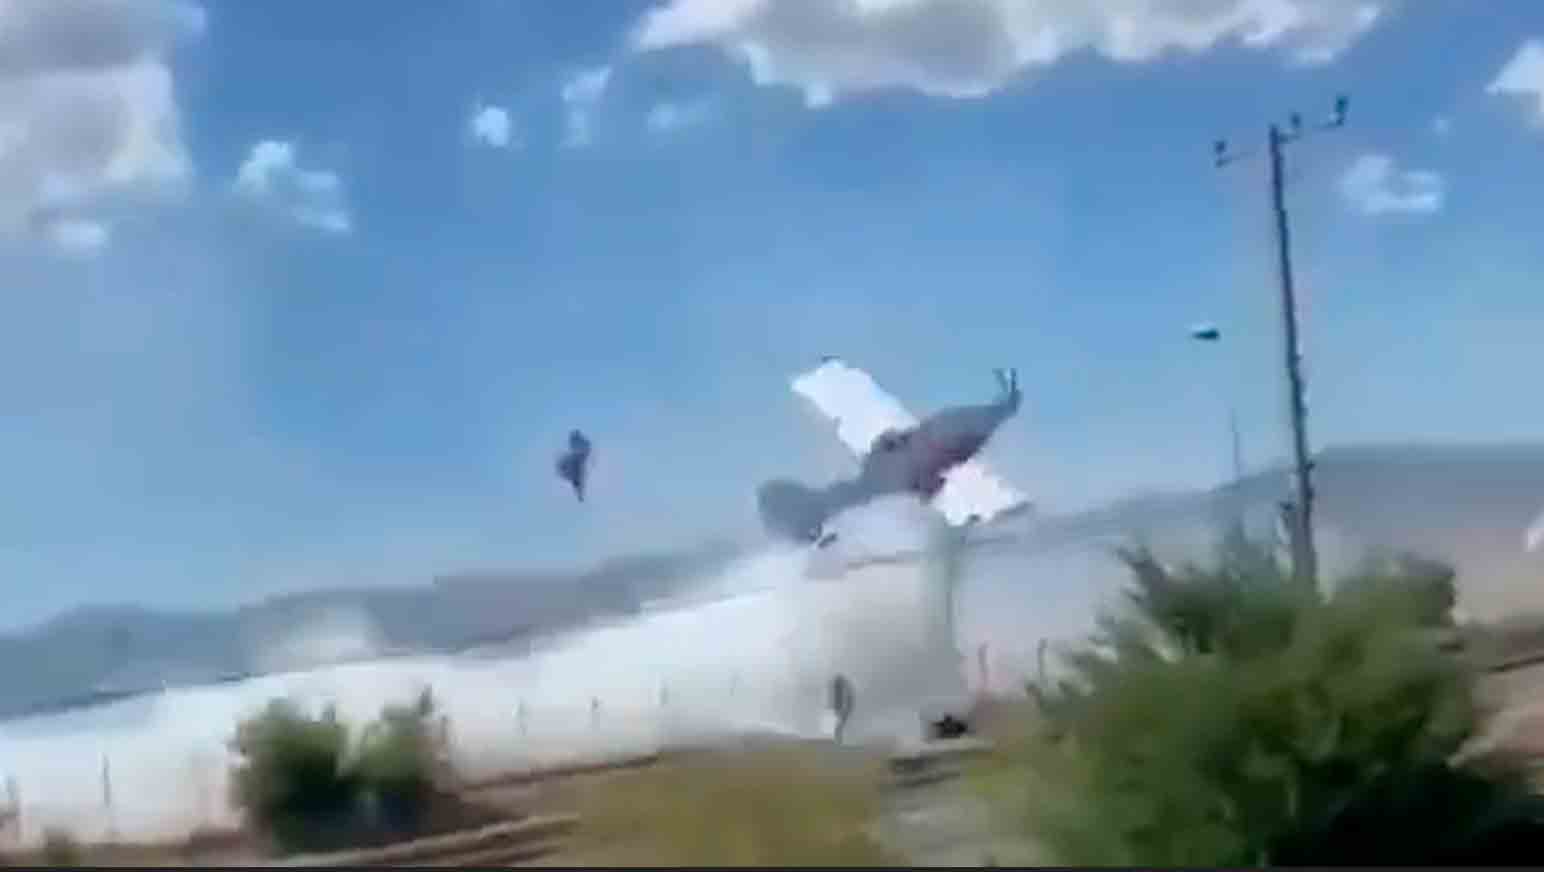 Avião dos bombeiros colide com linha elétrica, pega fogo e cai no Chile. Fotos e vídeos: Reprodução Twitter @Top_Disaster